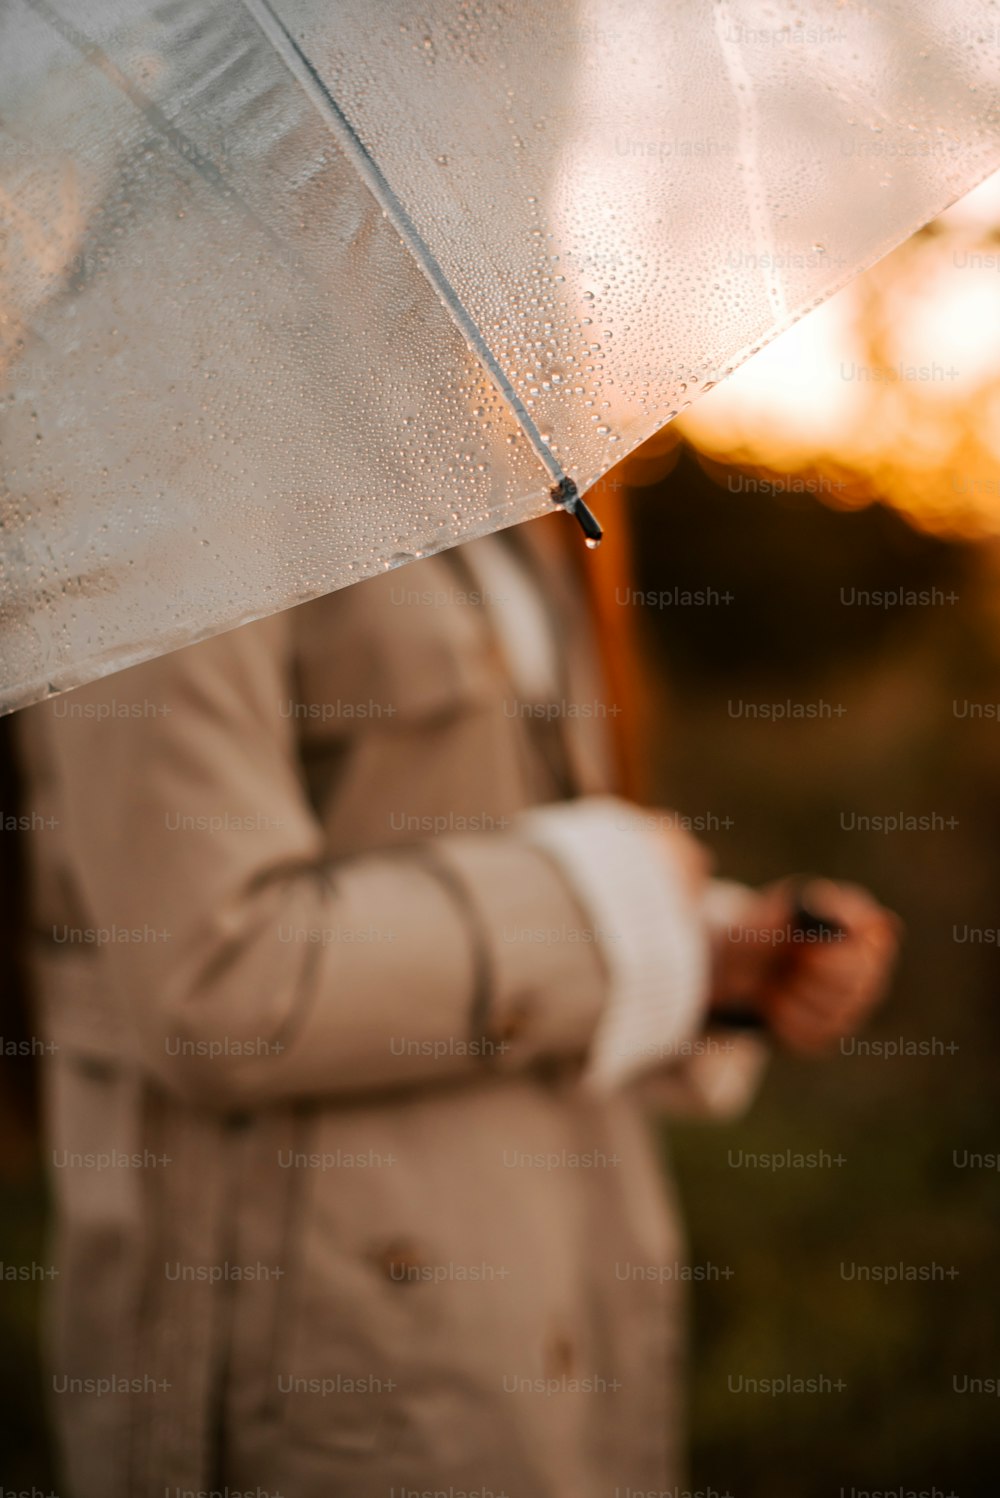 트렌치코트를 입고 우산을 들고 있는 여자